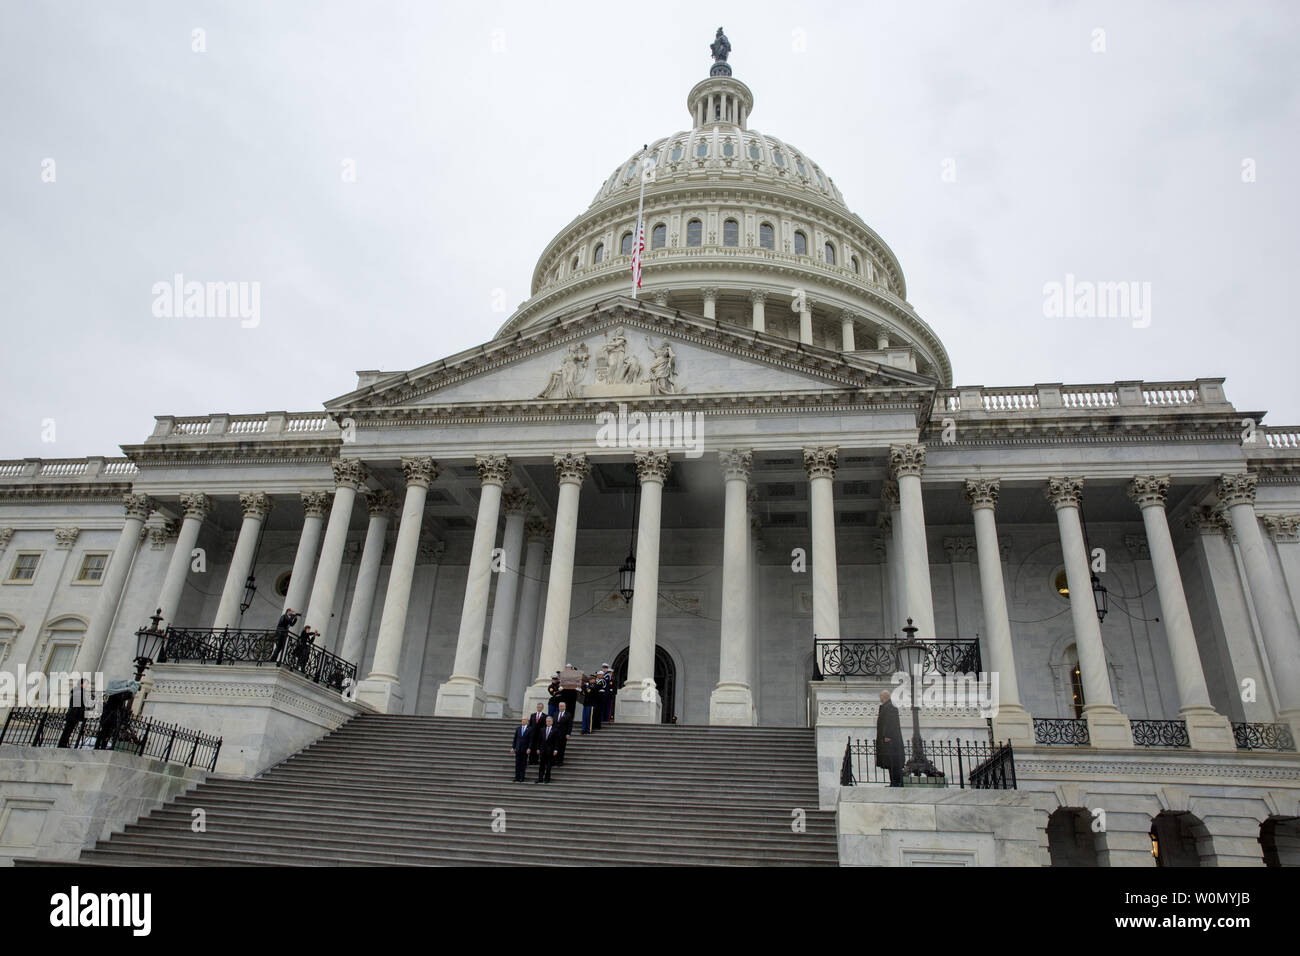 Die Schatulle der amerikanische Evangelist Billy Graham aus dem Osten Schritte auf dem US Capitol in Washington, DC, die am 1. März 2018. Nach dem Lügen zu Ehren in der Rotunde für einen Tag, sein Körper, der Köpfe zu Nord-Carolina für eine Beerdigung am Freitag. Foto von Tasos Katopodis Stockfoto